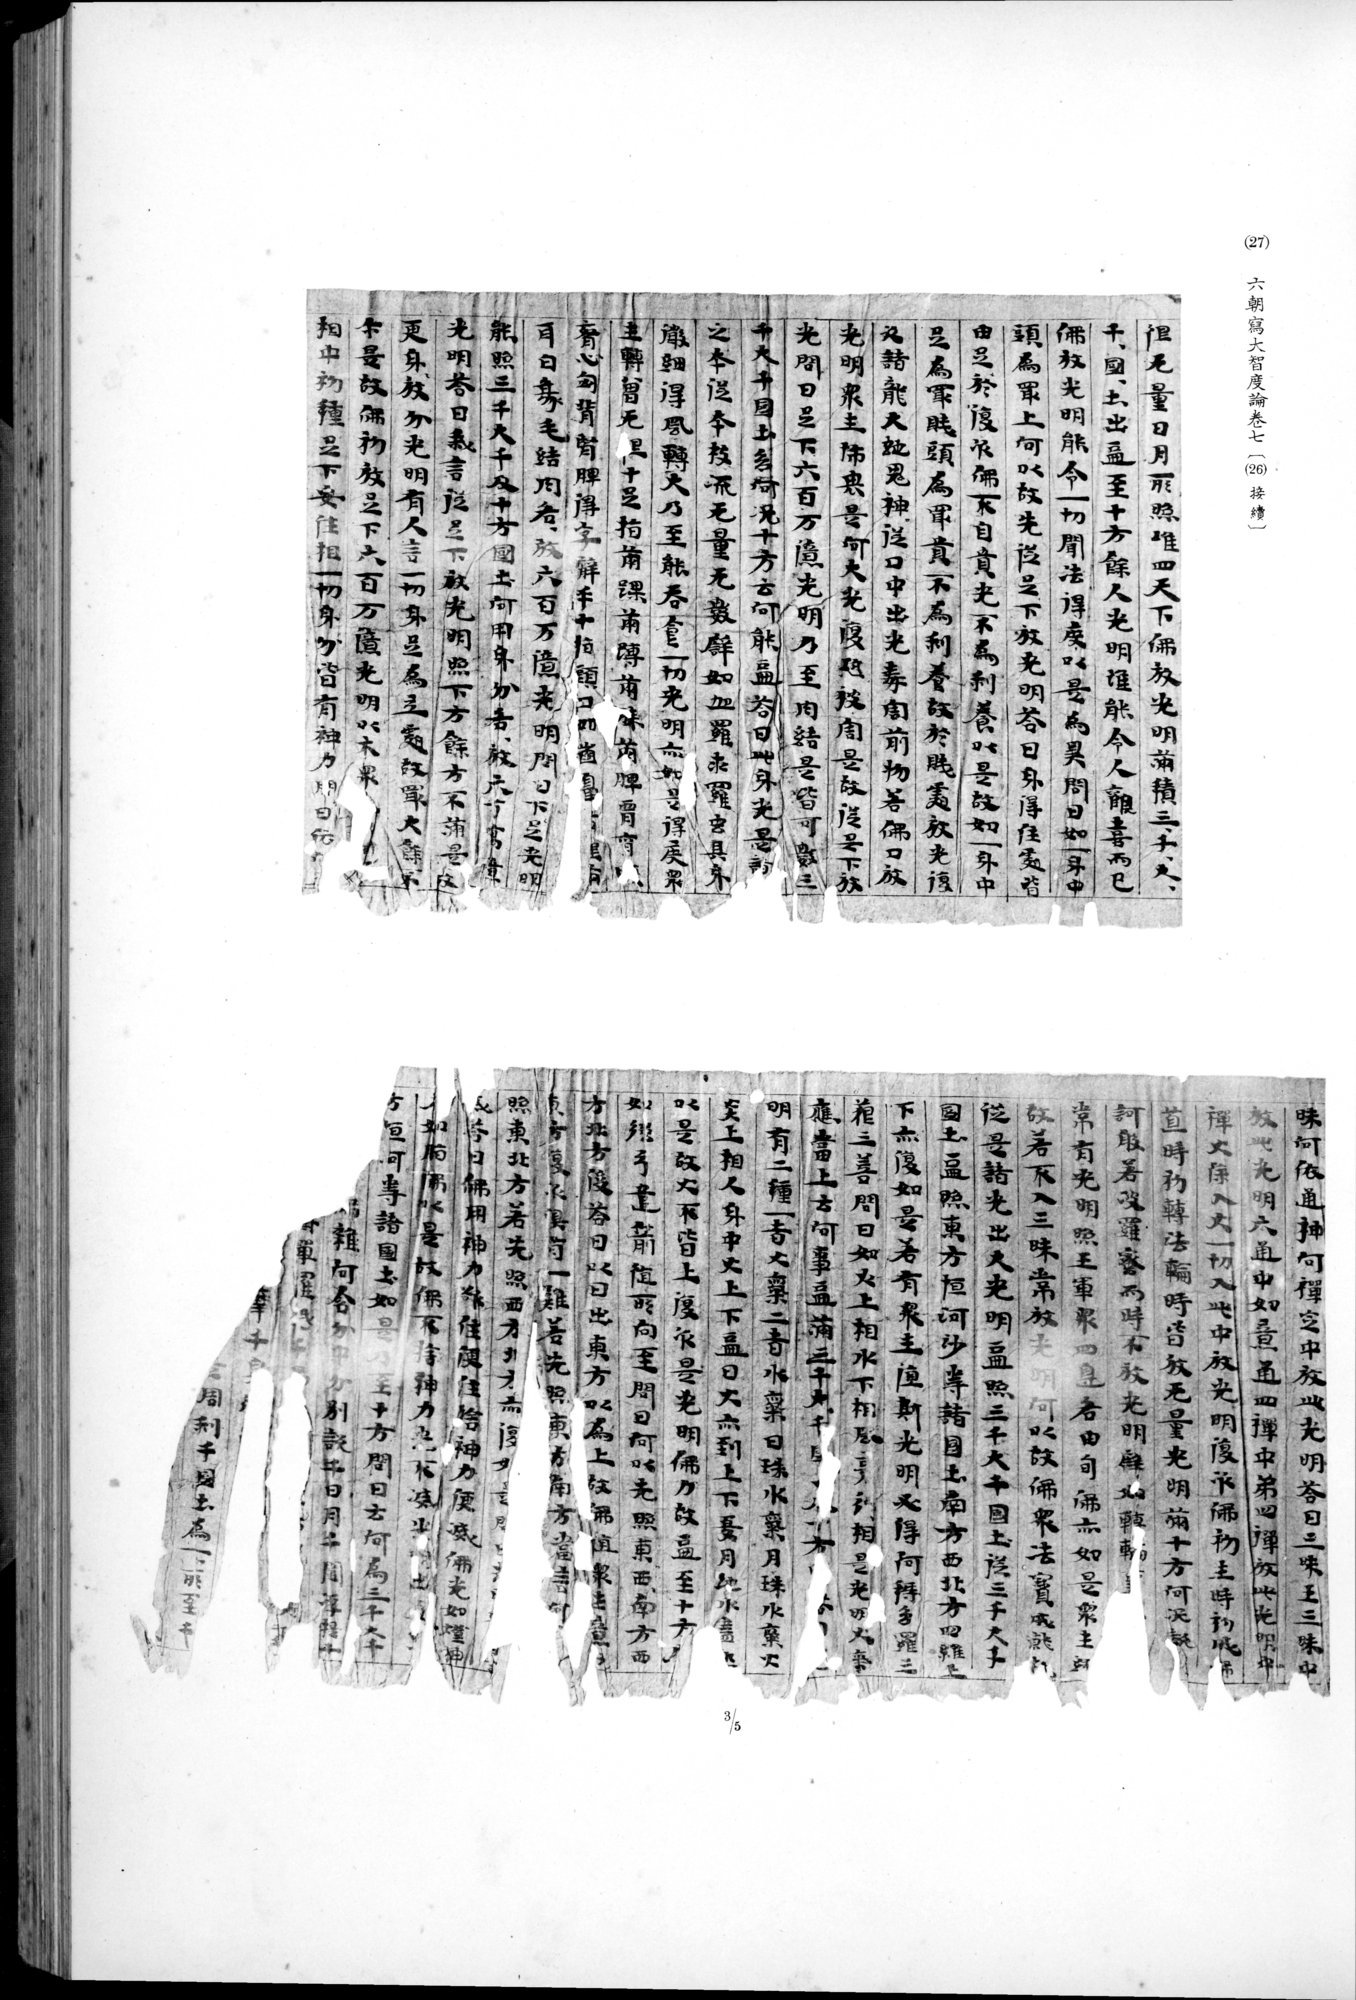 西域考古図譜 : vol.2 / Page 69 (Grayscale High Resolution Image)